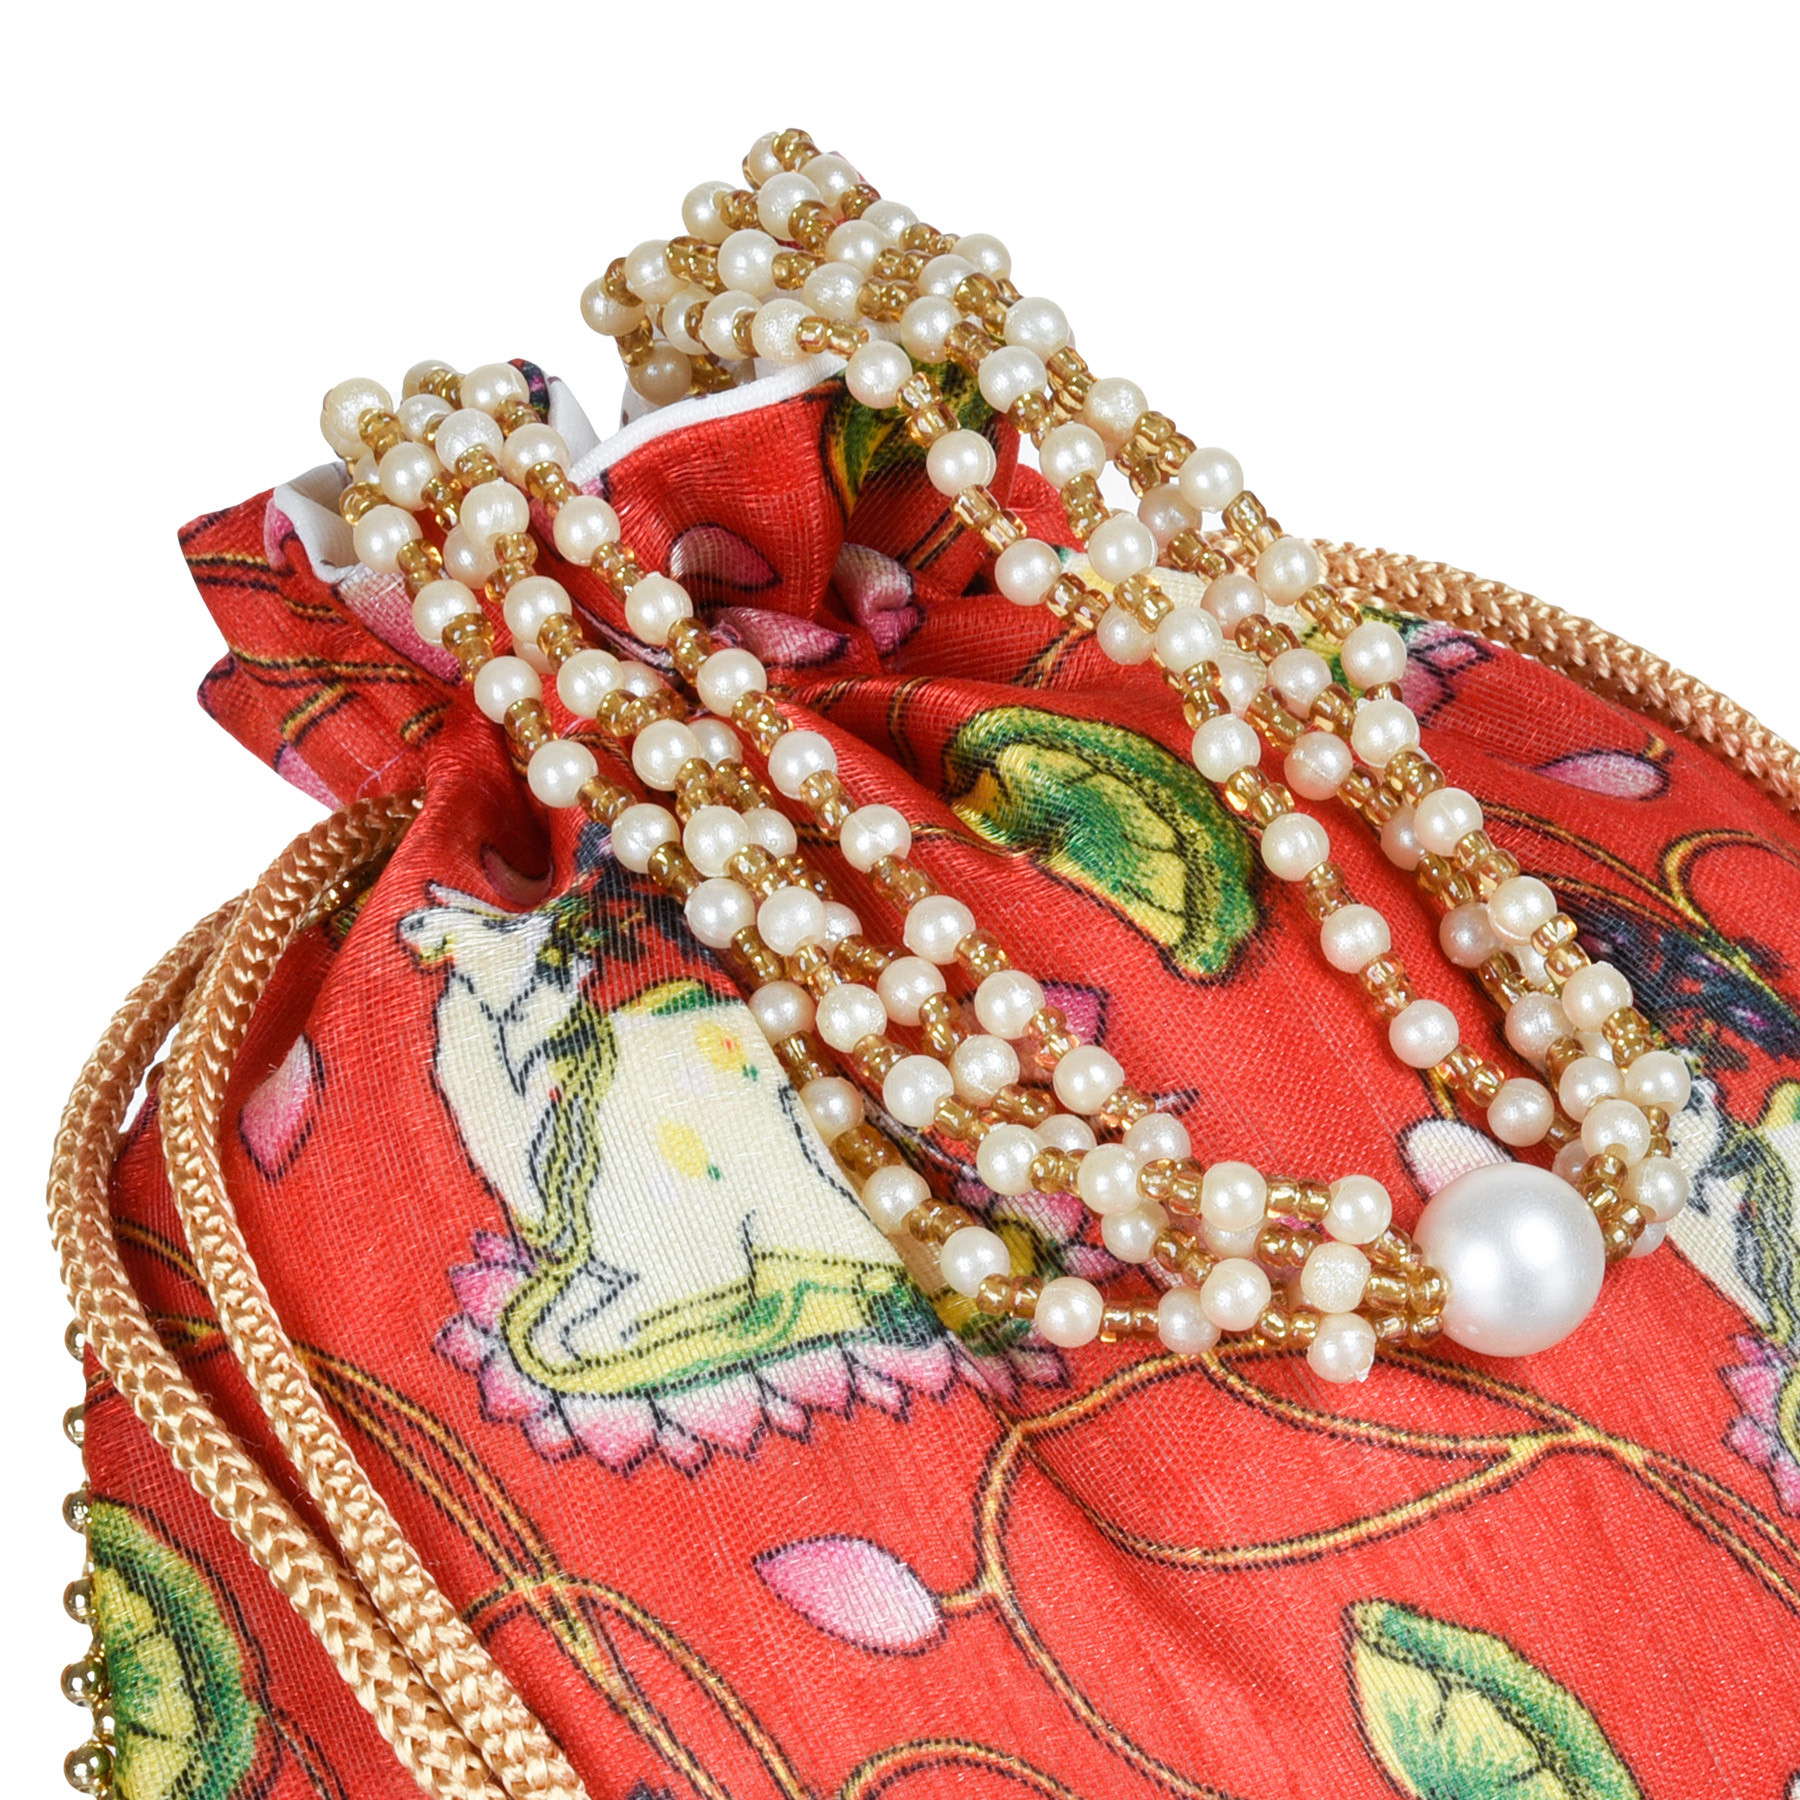 Kuber Industries Potli | Silk Wedding Potli | Wallet Potli | Christmas Gift Potli | Baby Shower Potli | Traditional Shagun Potli | Drawstring with Beads Handle Potli | Cow-Design Patli Potli | Red